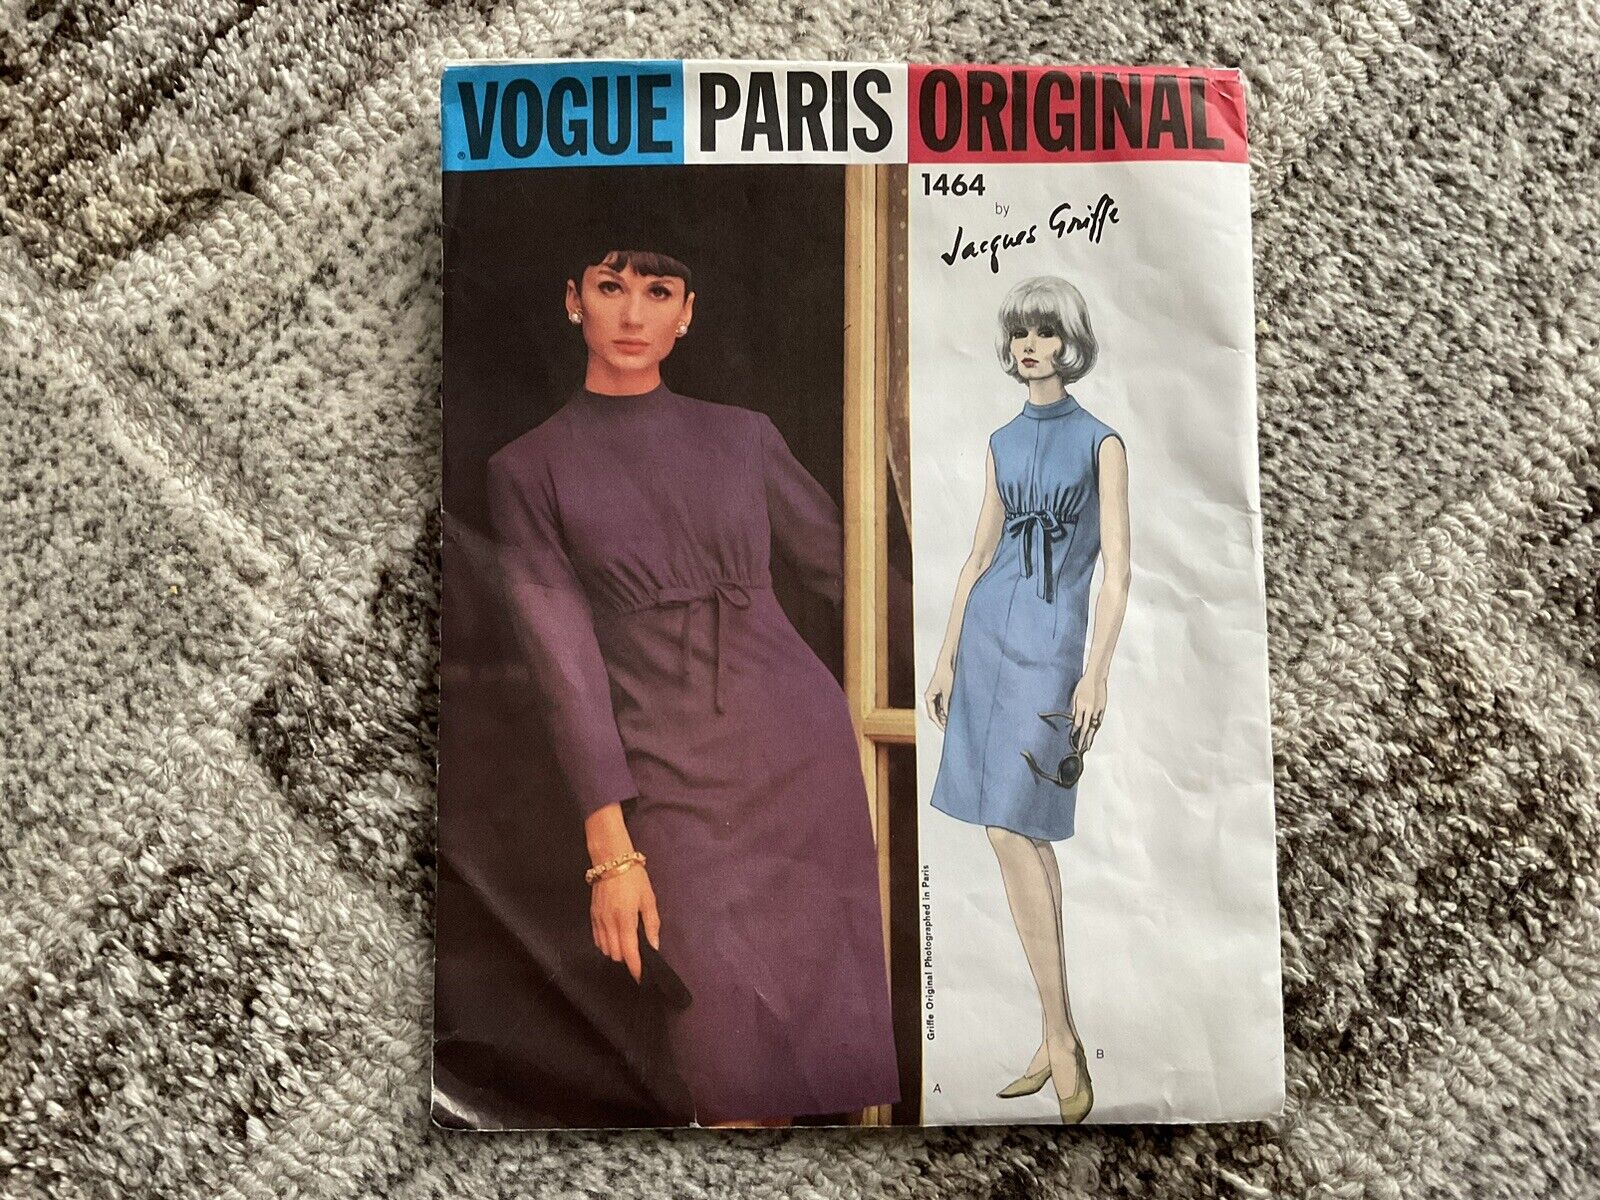 VOGUE PARIS ORIGINAL  1464 Jacques Griffe Dress Size 10 Vintage